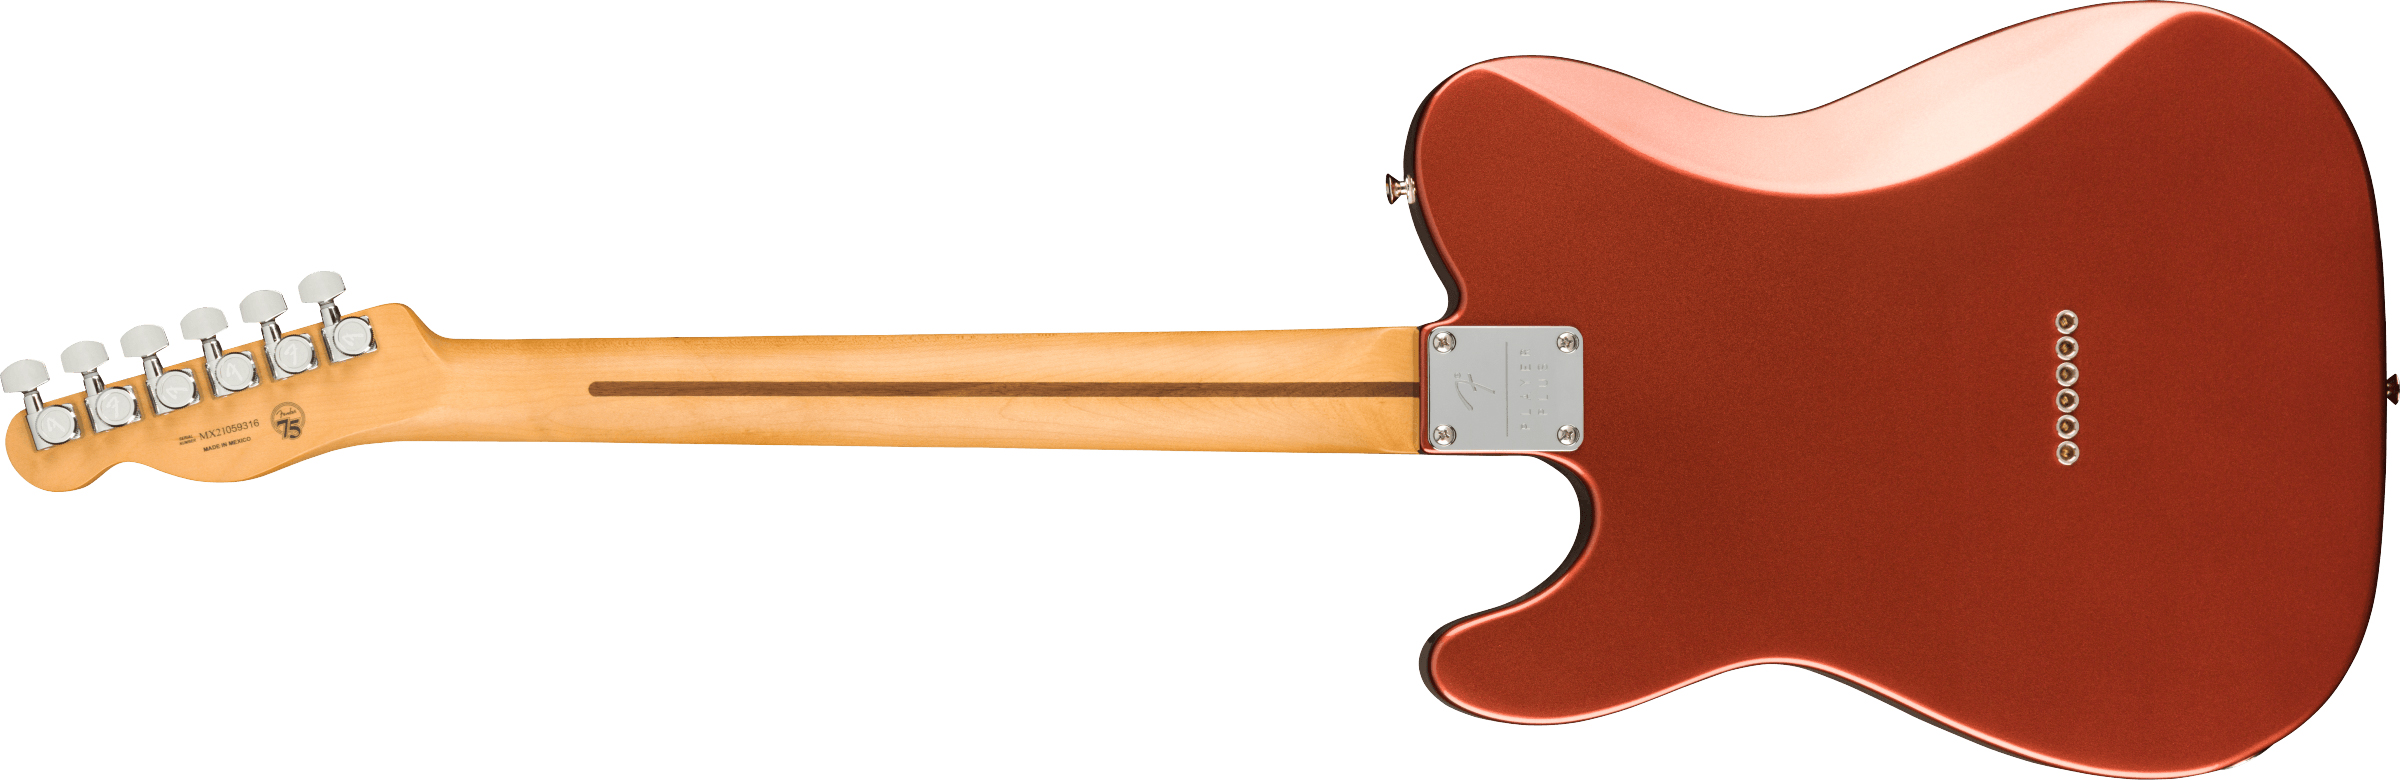 Fender Tele Player Plus Mex 2s Ht Mn - Aged Candy Apple Red - Televorm elektrische gitaar - Variation 1